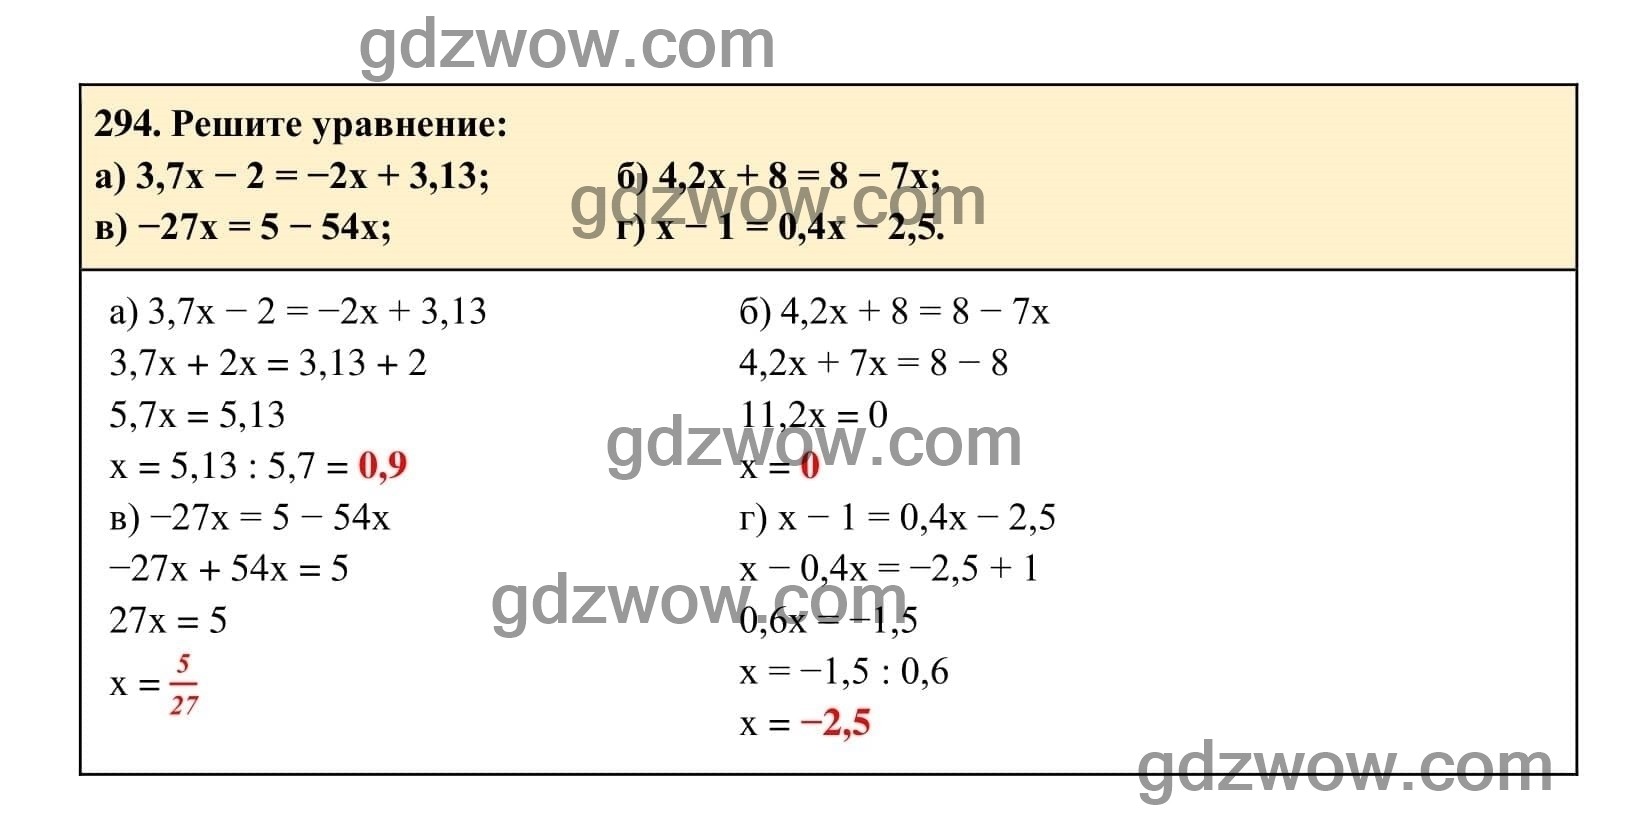 Упражнение 294 - ГДЗ по Алгебре 7 класс Учебник Макарычев (решебник) - GDZwow